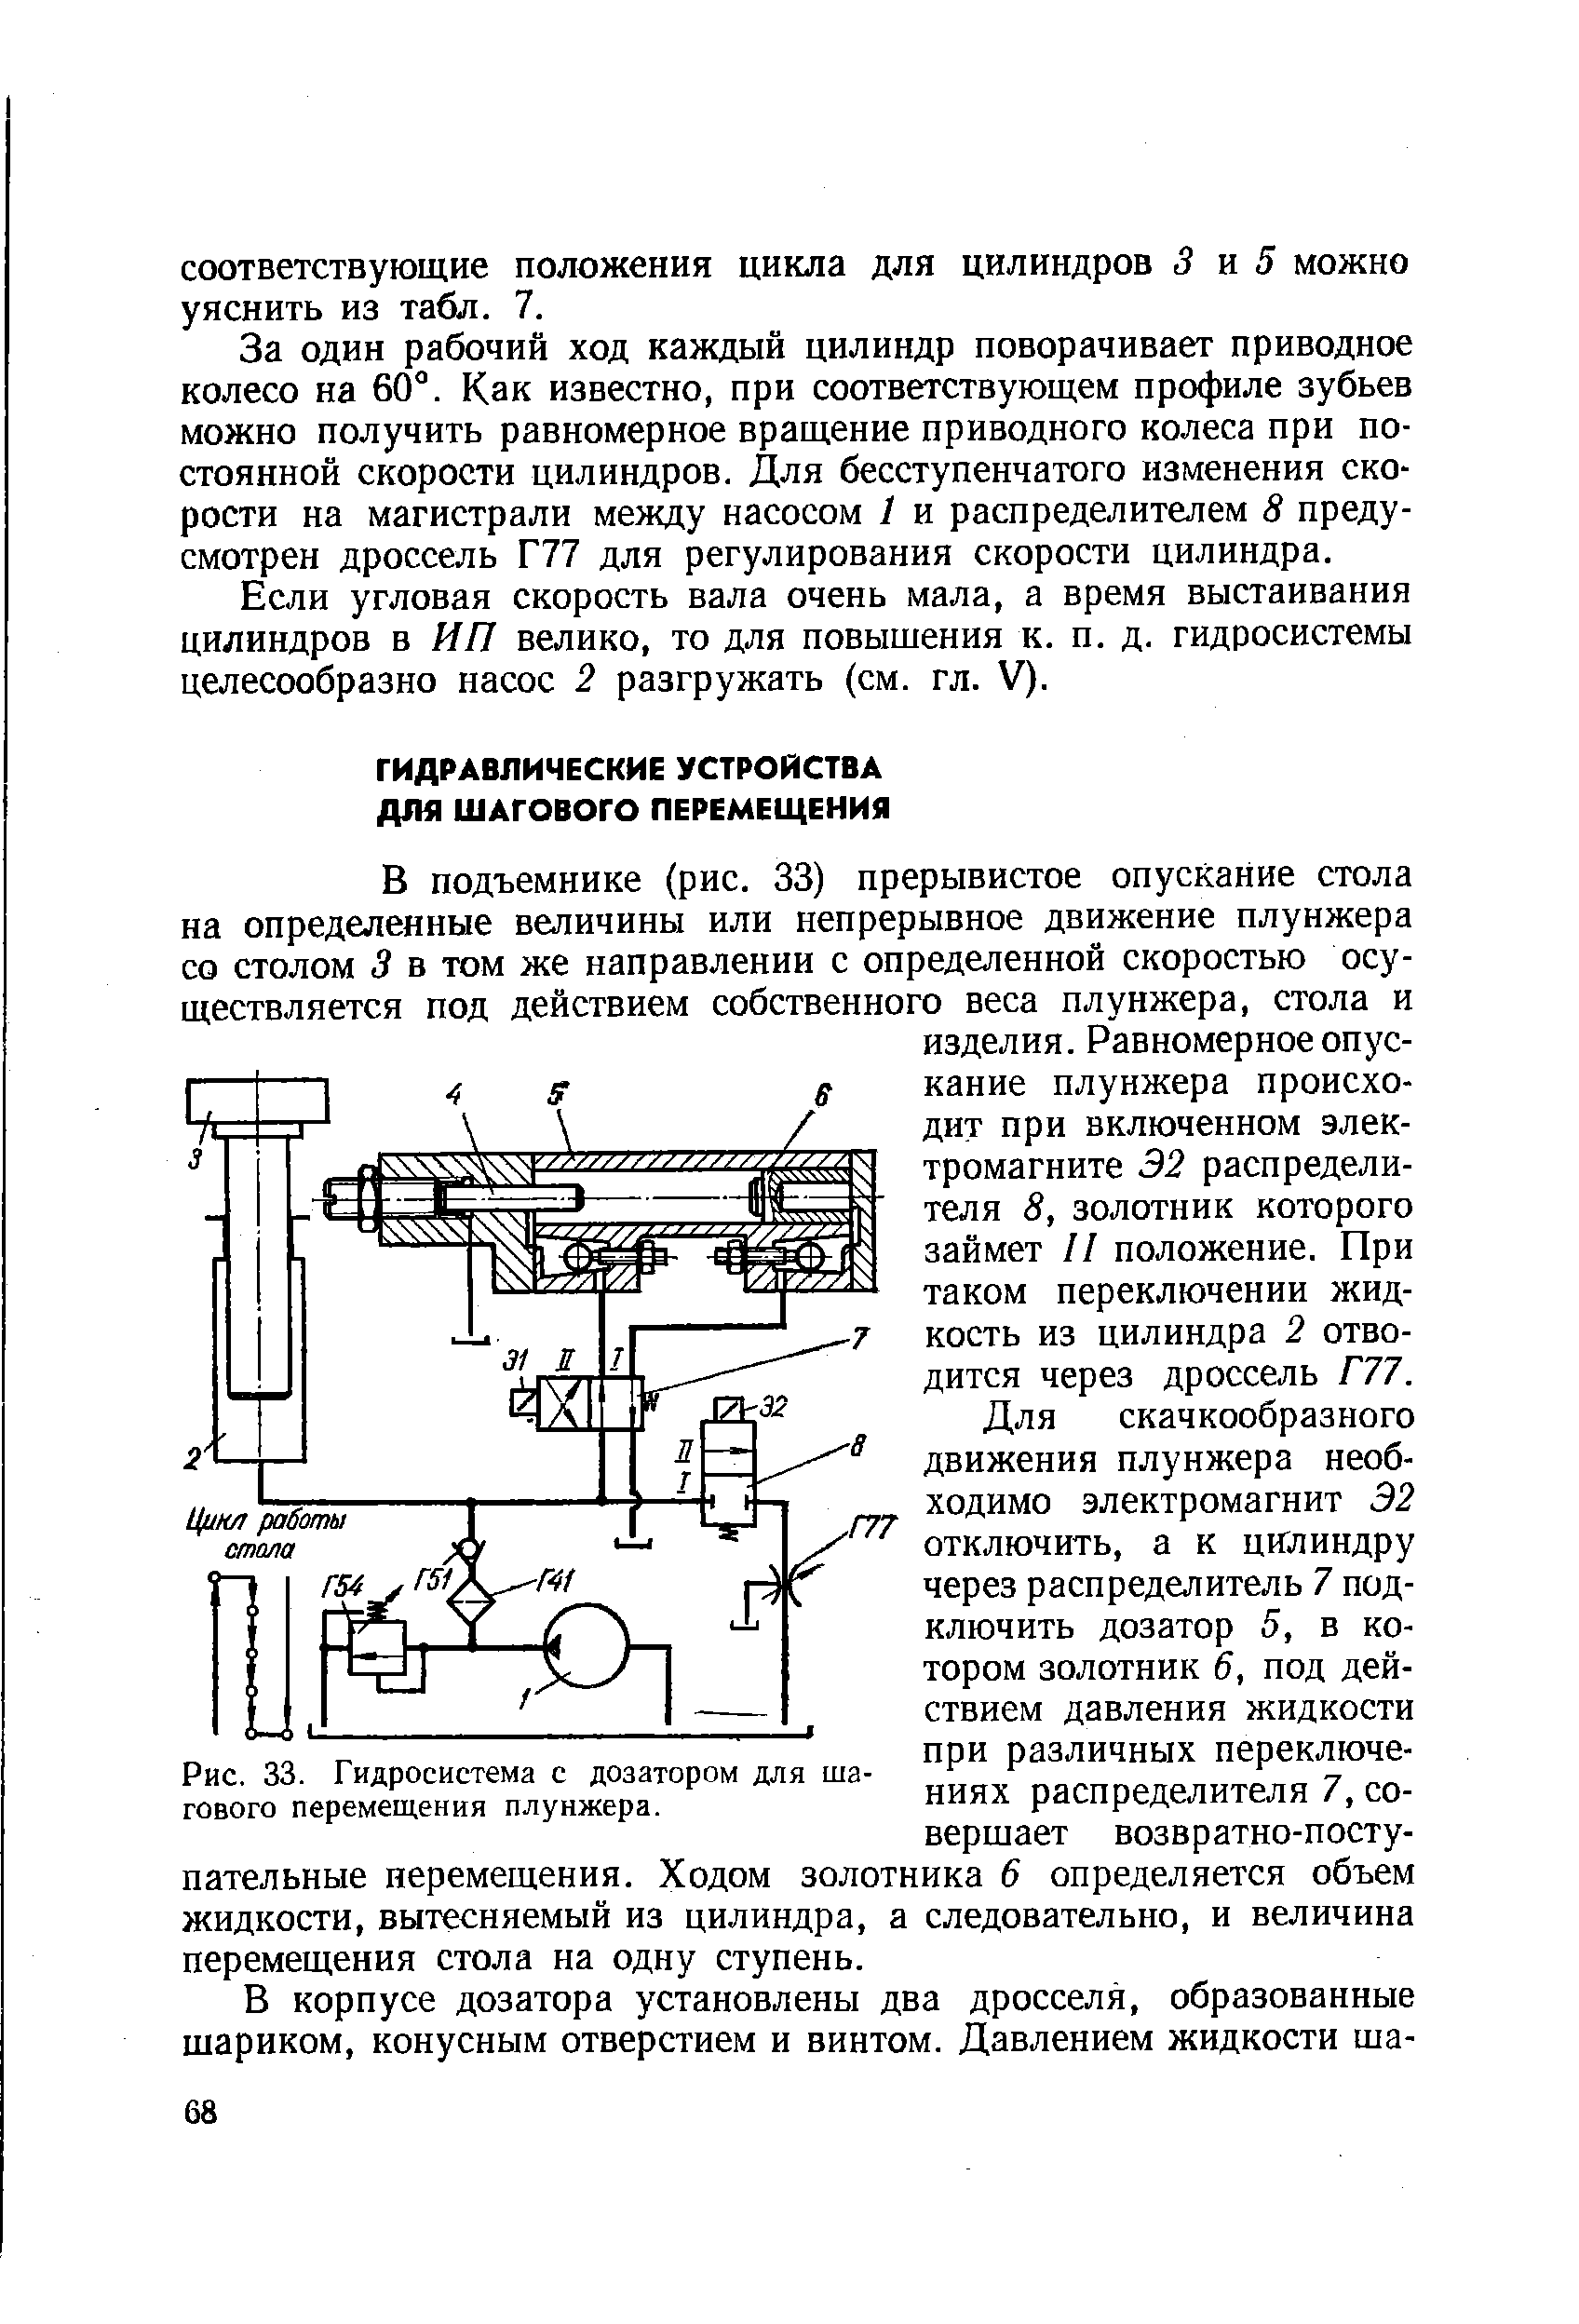 Рис. 33. Гидросистема с дозатором для шагового перемещения плунжера.
